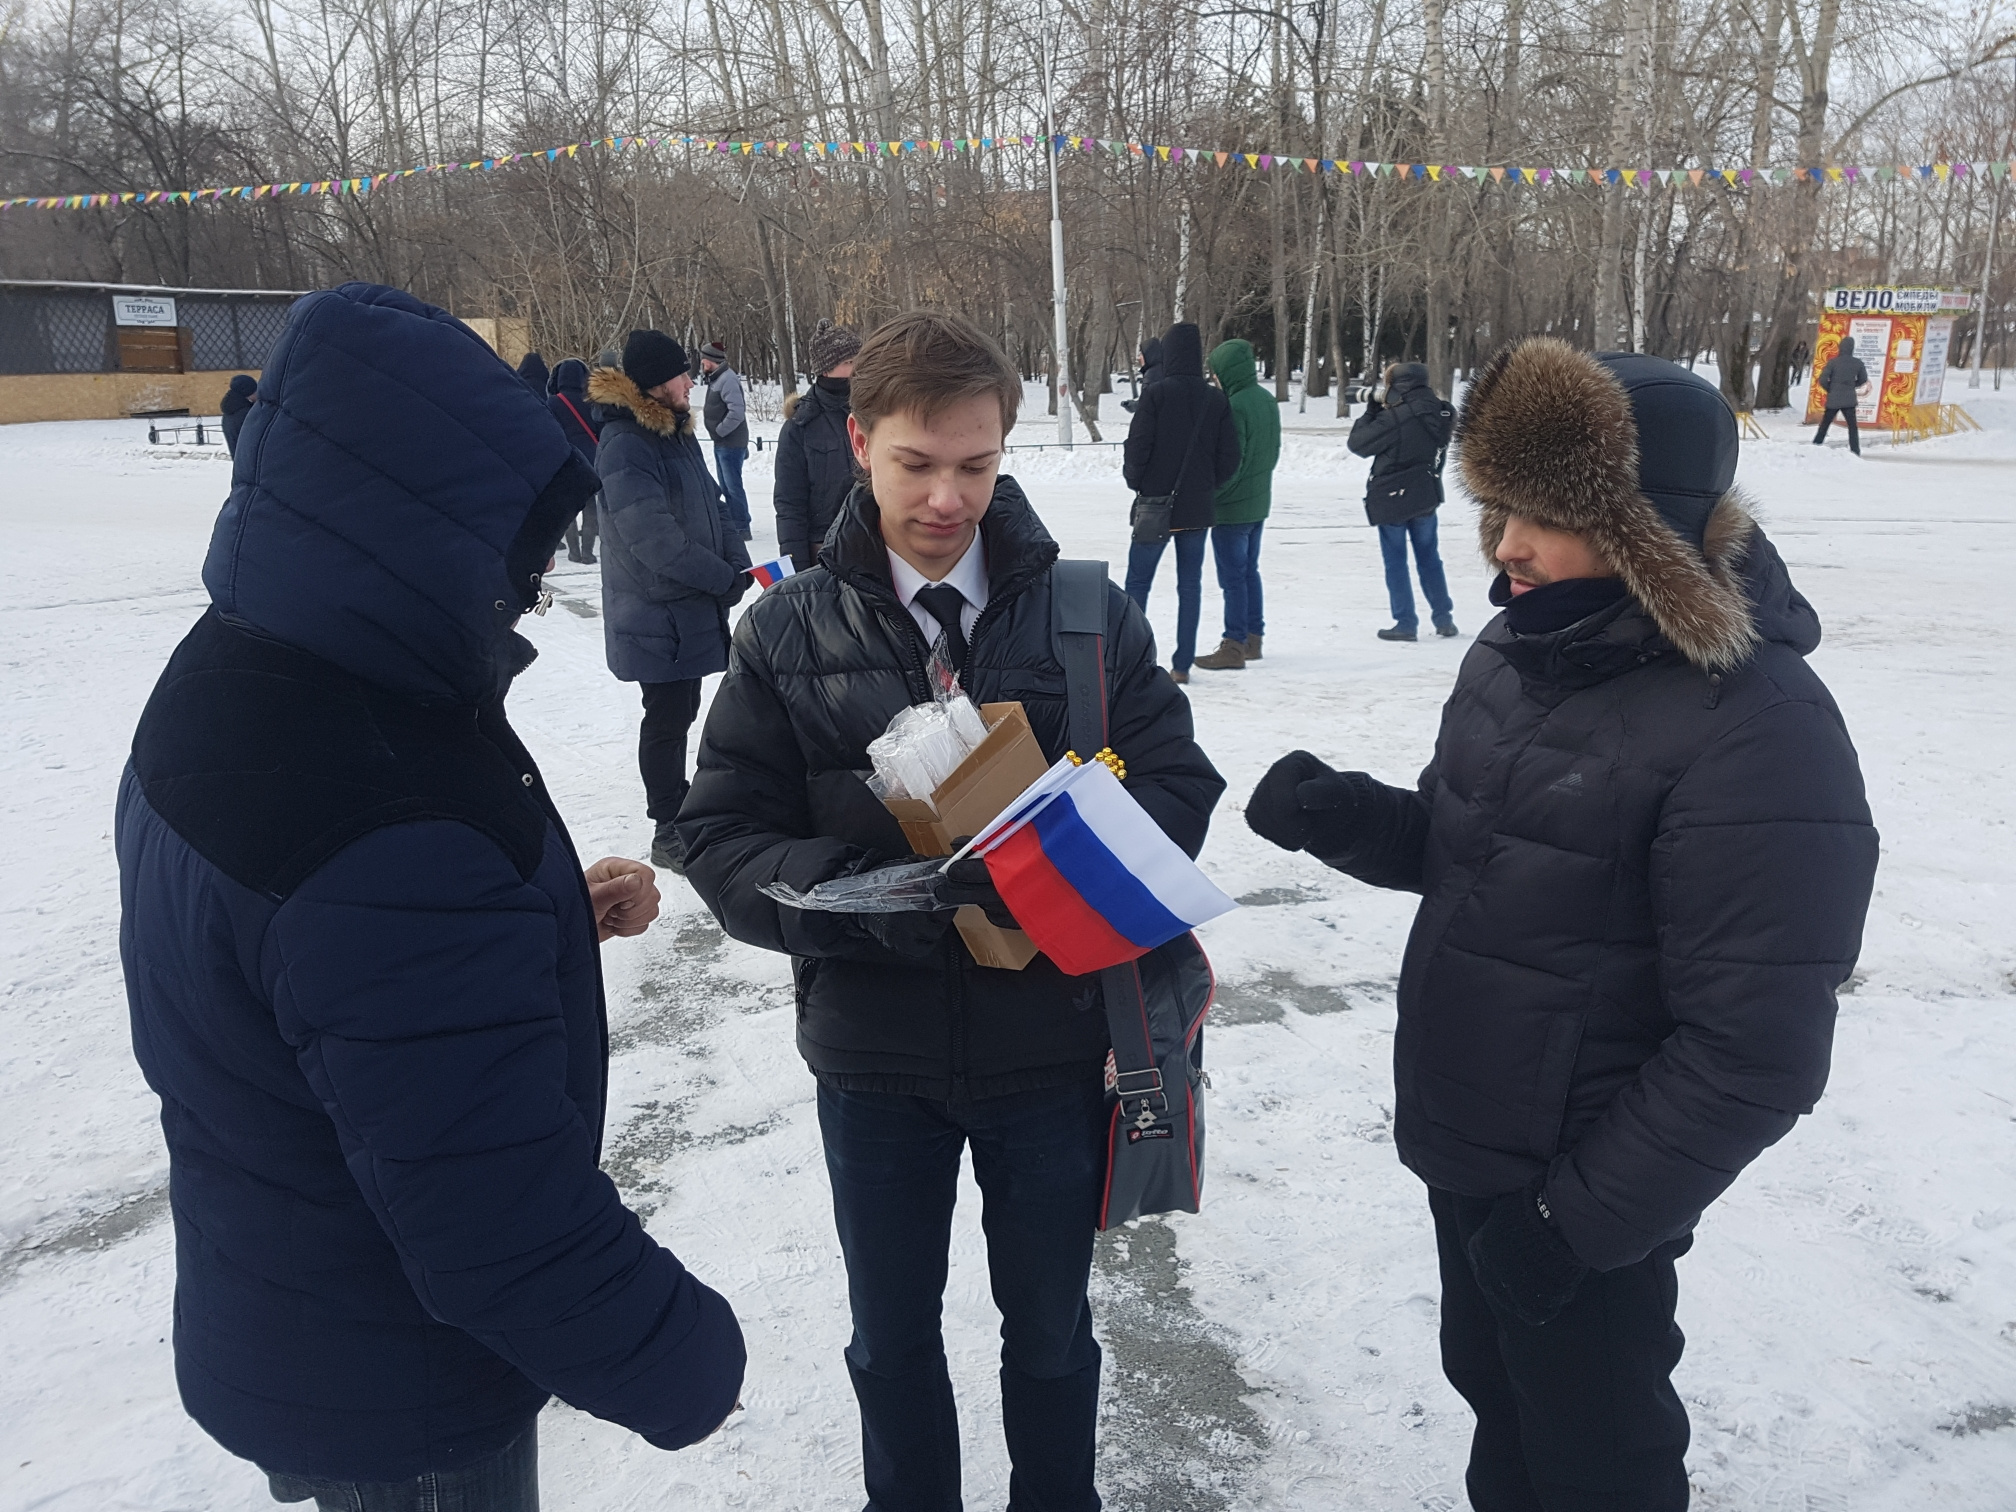 Все желающие могли получить флаг России, значки и наклейки с именем Алексея Навального